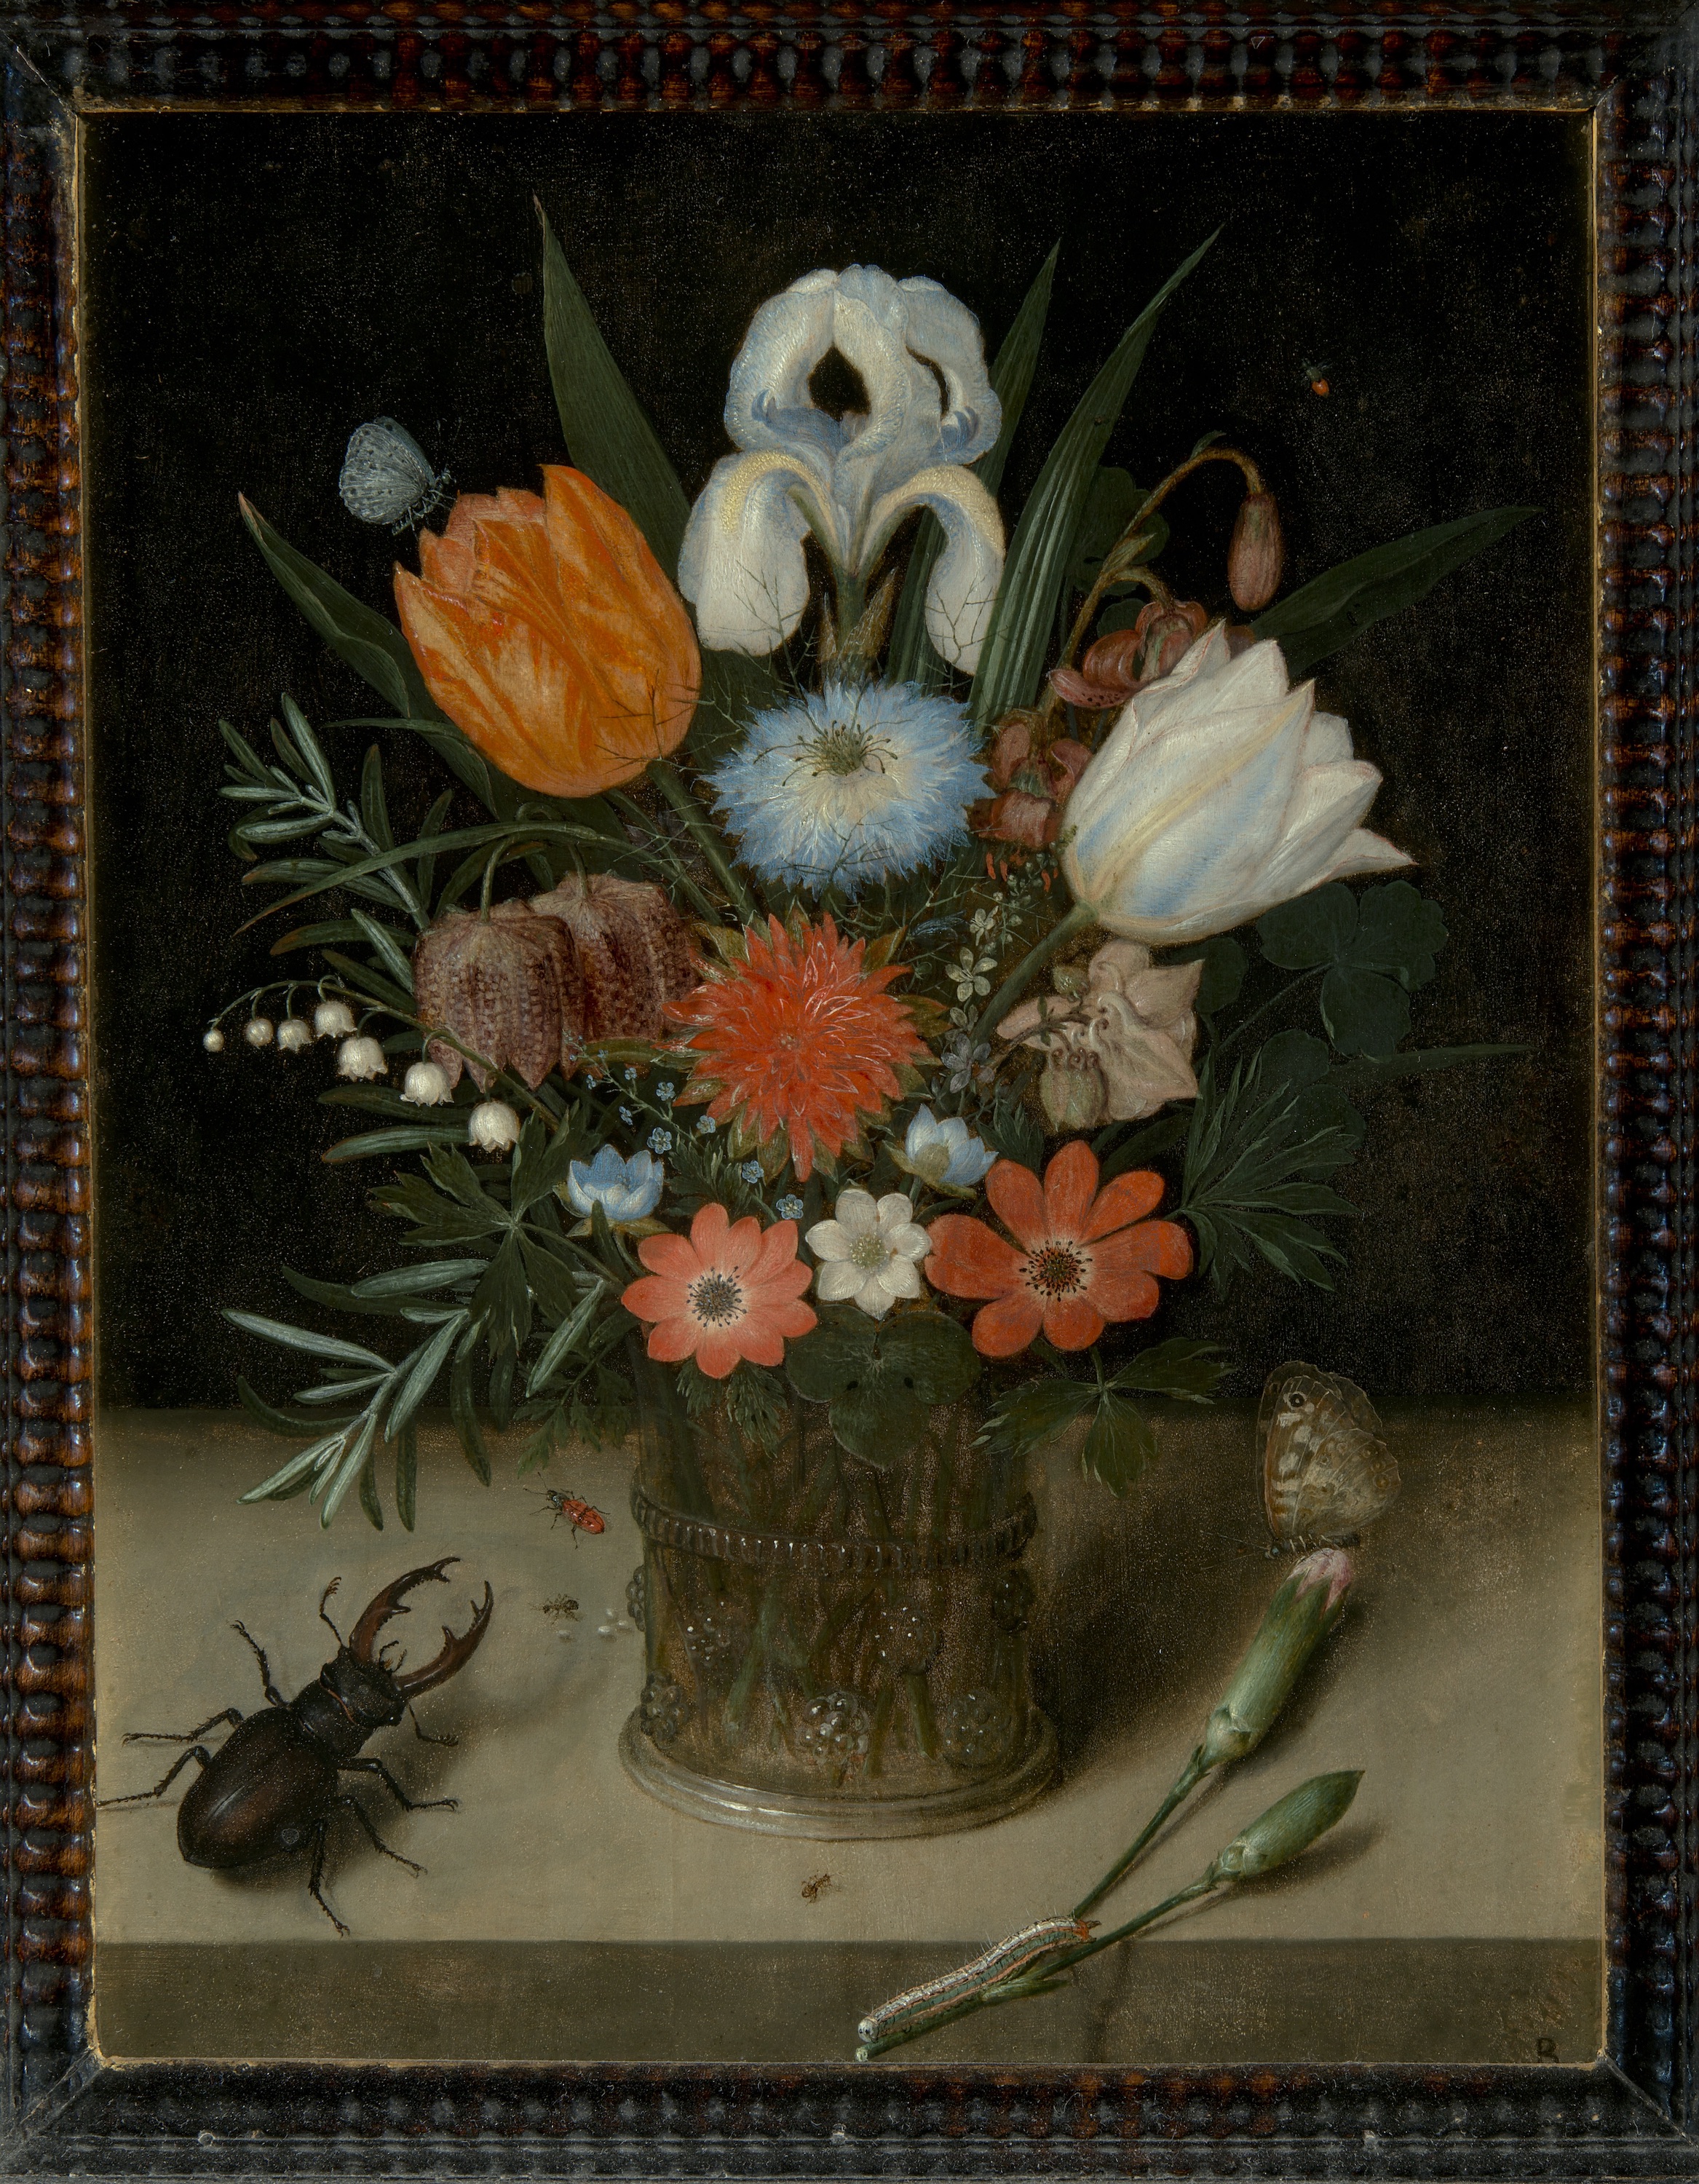 Vase of Flowers by Peter Binoit - 1613 - 28.5 x 21,6 cm National Gallery in Prague